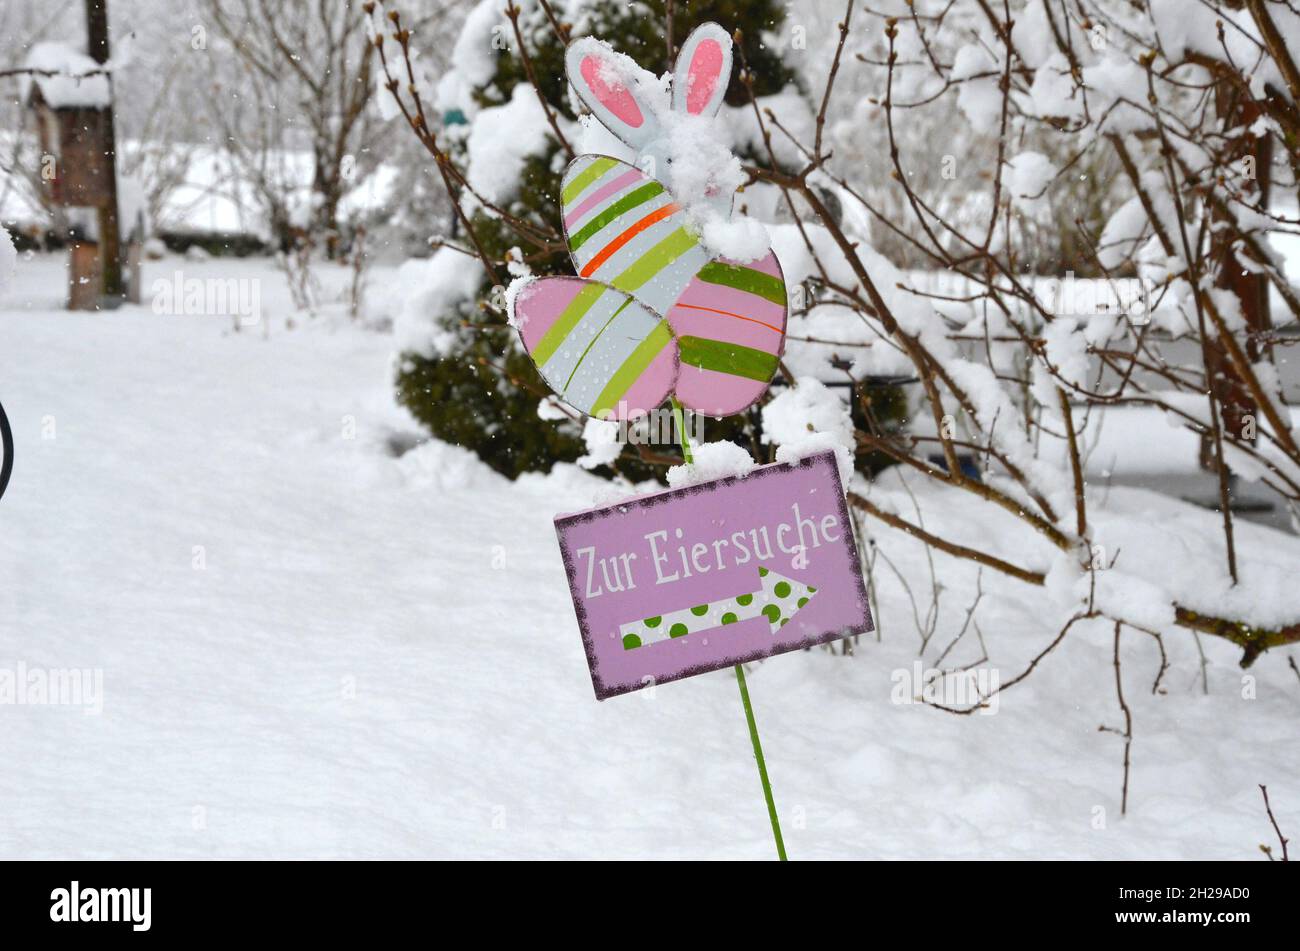 Ostern im Schnee - Ostereiersuche im Schnee - Winterliche Ostern - Weiße Ostern - Easter in the snow - Easter egg hunt in the snow - white easter - wi Stock Photo